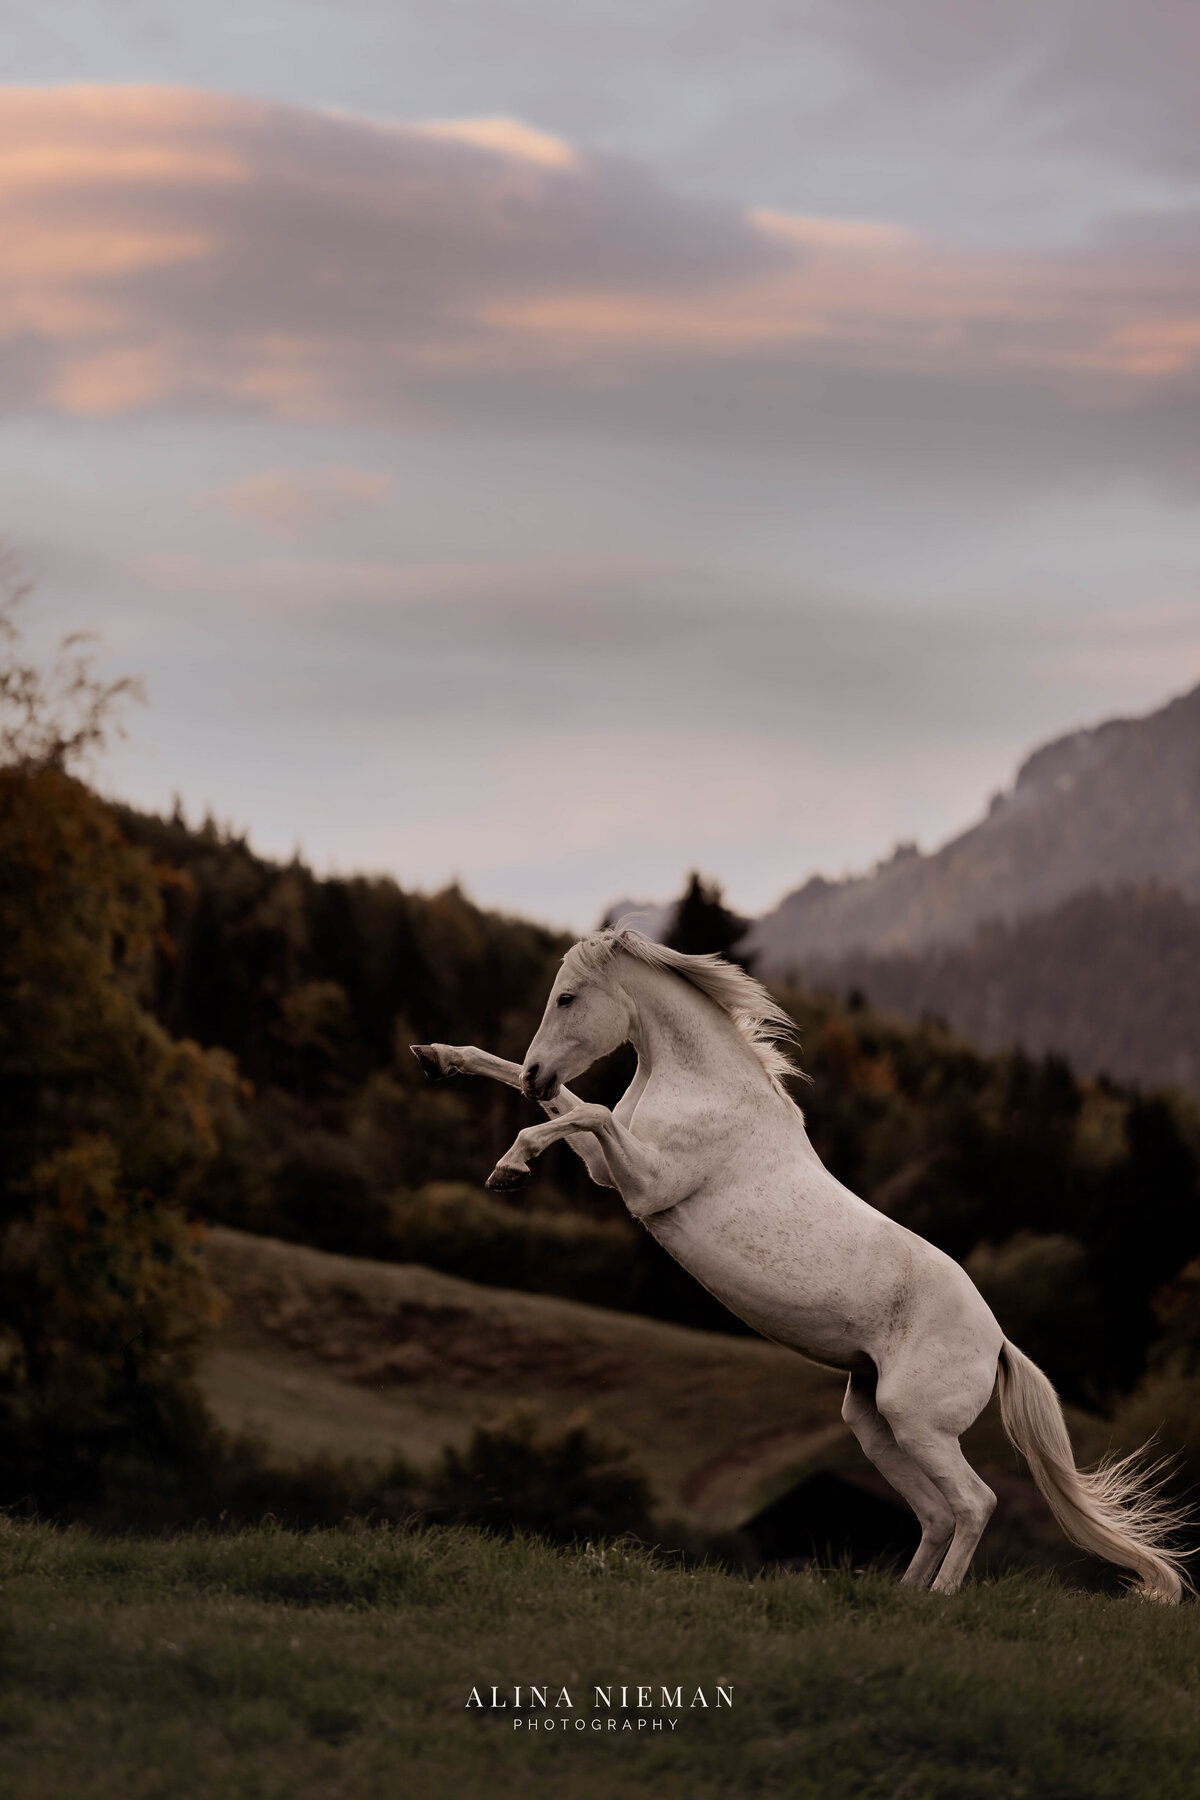 Steigerend paard is zo krachtig maar tegelijkertijd elegant